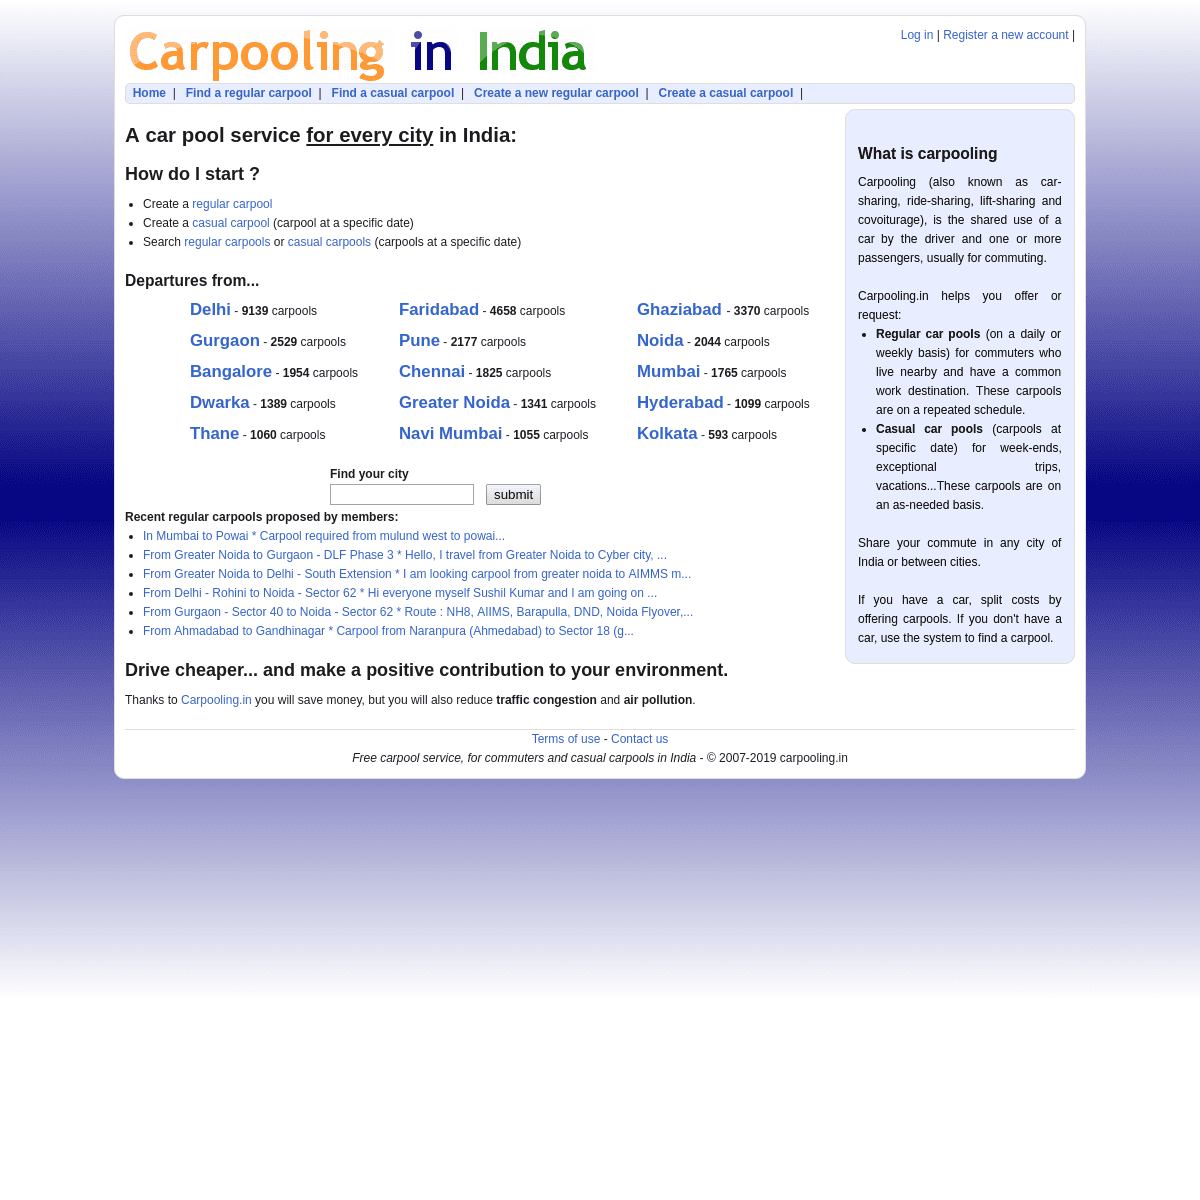 Carpool, rideshare - Carpooling in India